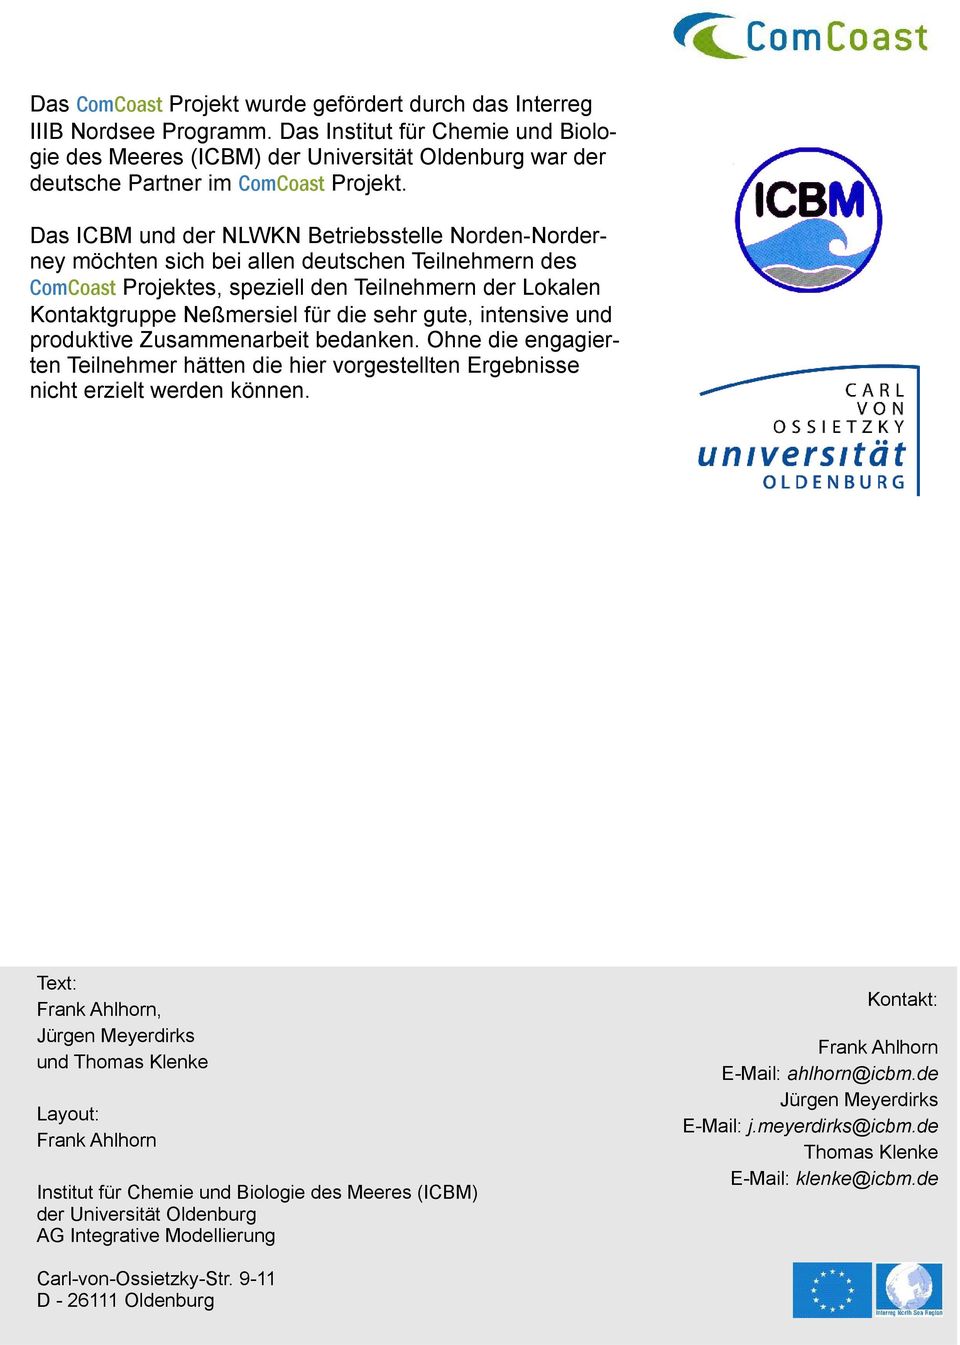 Das ICBM und der NLWKN Betriebsstelle Norden-Norderney möchten sich bei allen deutschen Teilnehmern des ComCoast Projektes, speziell den Teilnehmern der Lokalen Kontaktgruppe Neßmersiel für die sehr